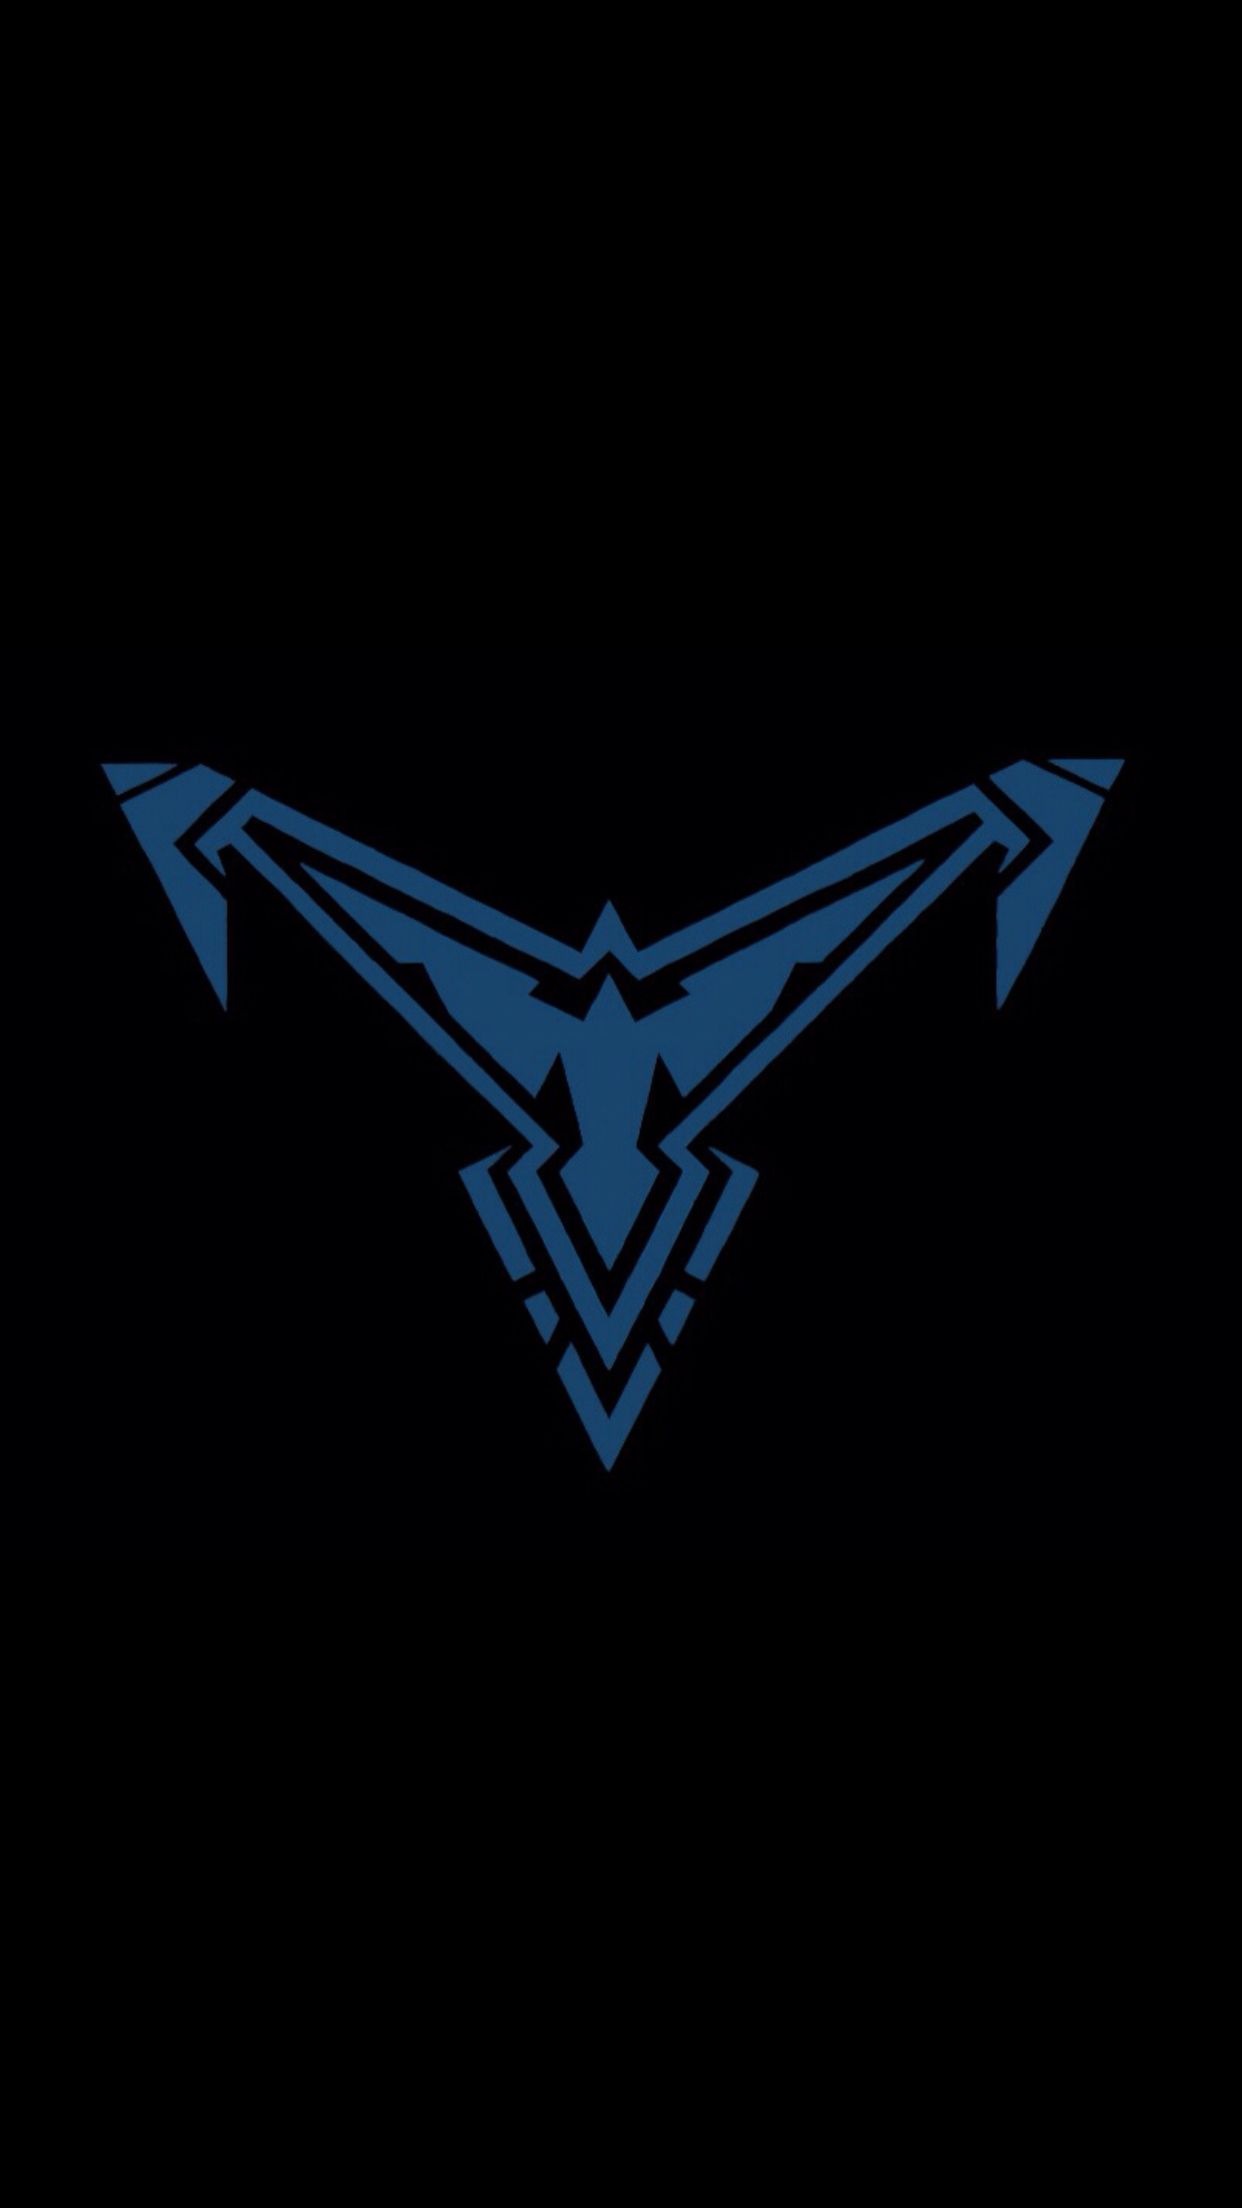 tema wallpaper,black,logo,emblem,electric blue,symbol